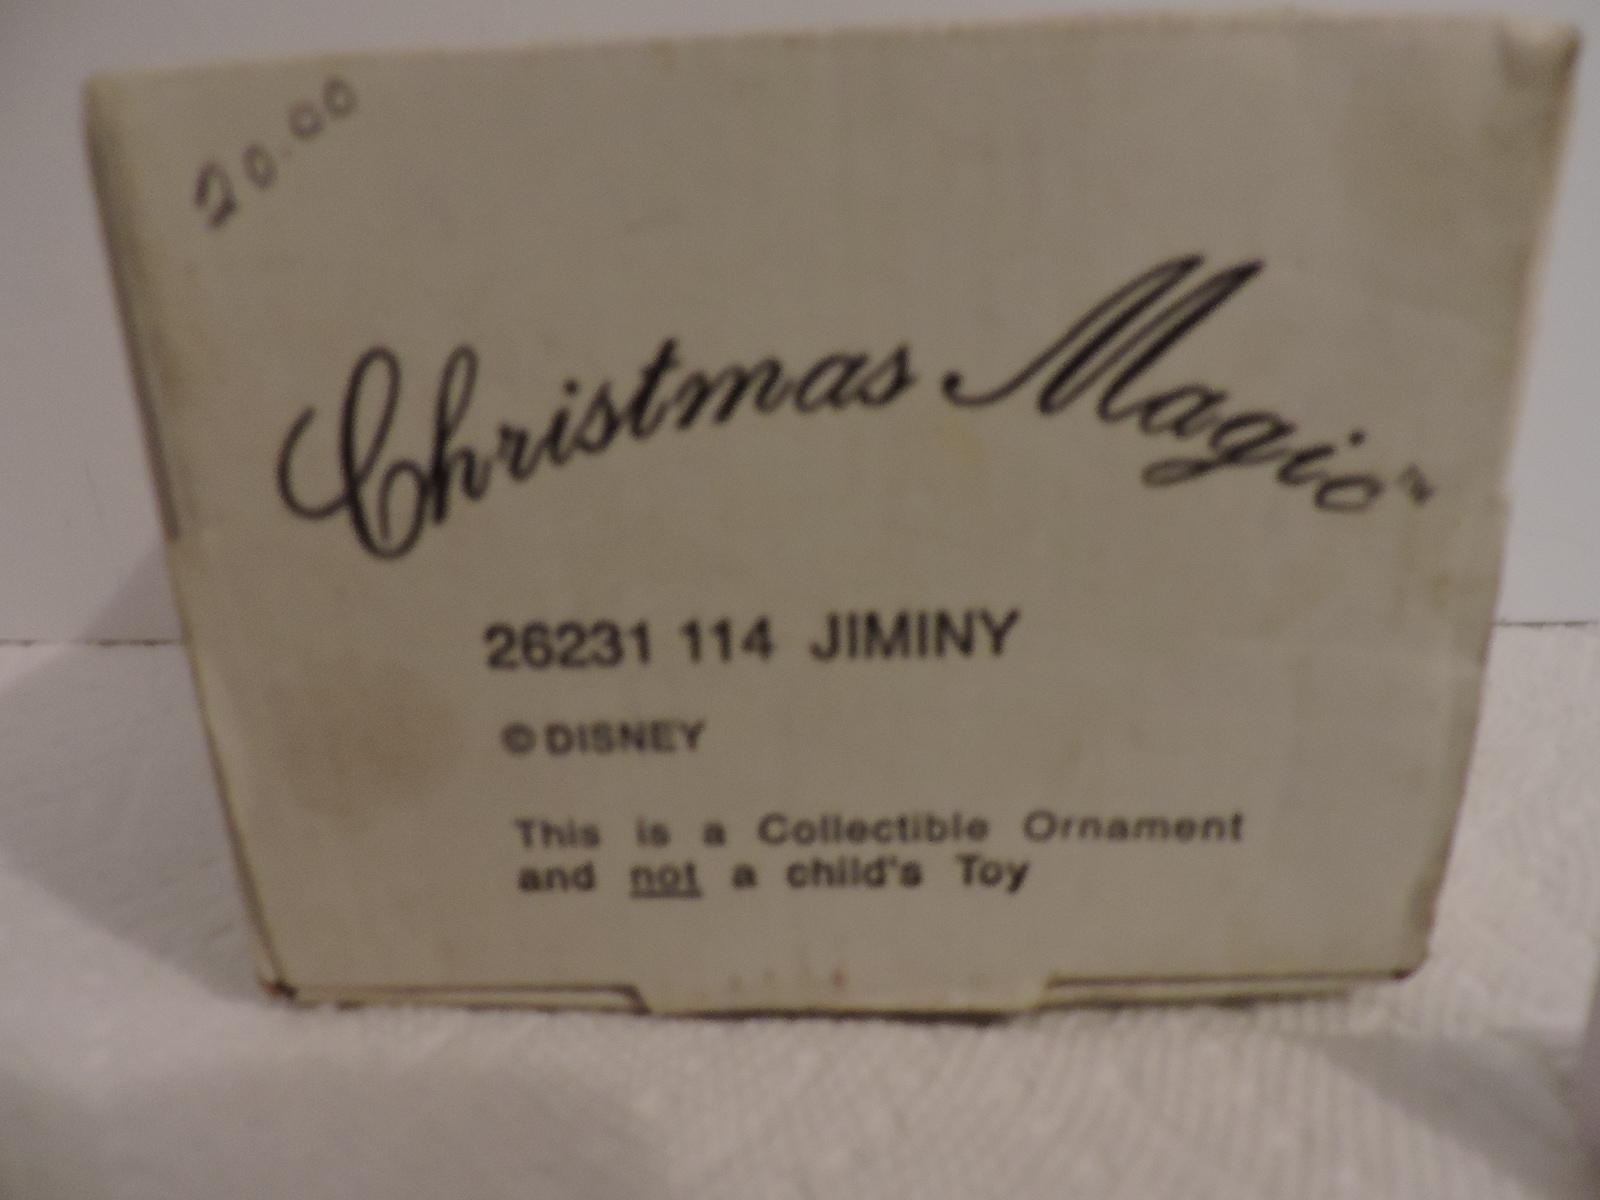 Disney, Groiler, Jiminy Christmas Collectible Ornament, Christmas Magic, 26231 114